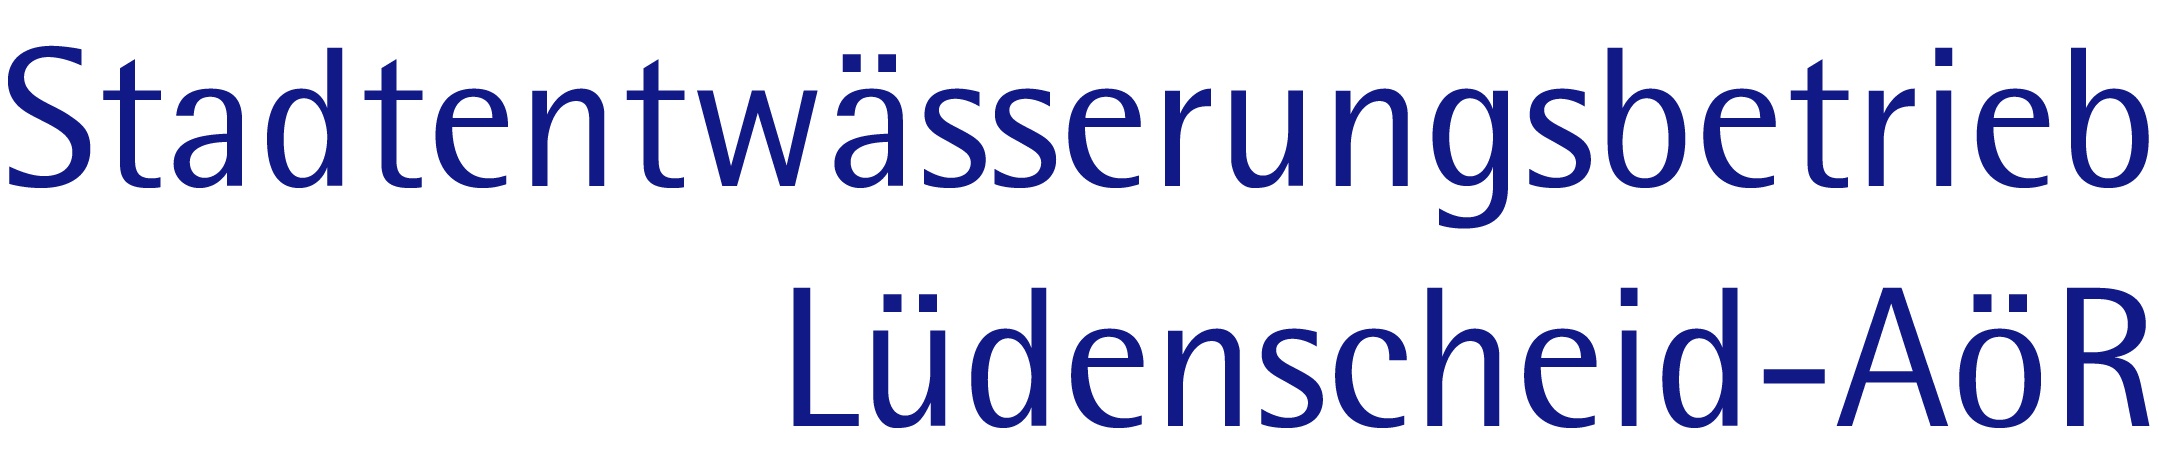 Logo Stadtentwässerung Lüdenscheid